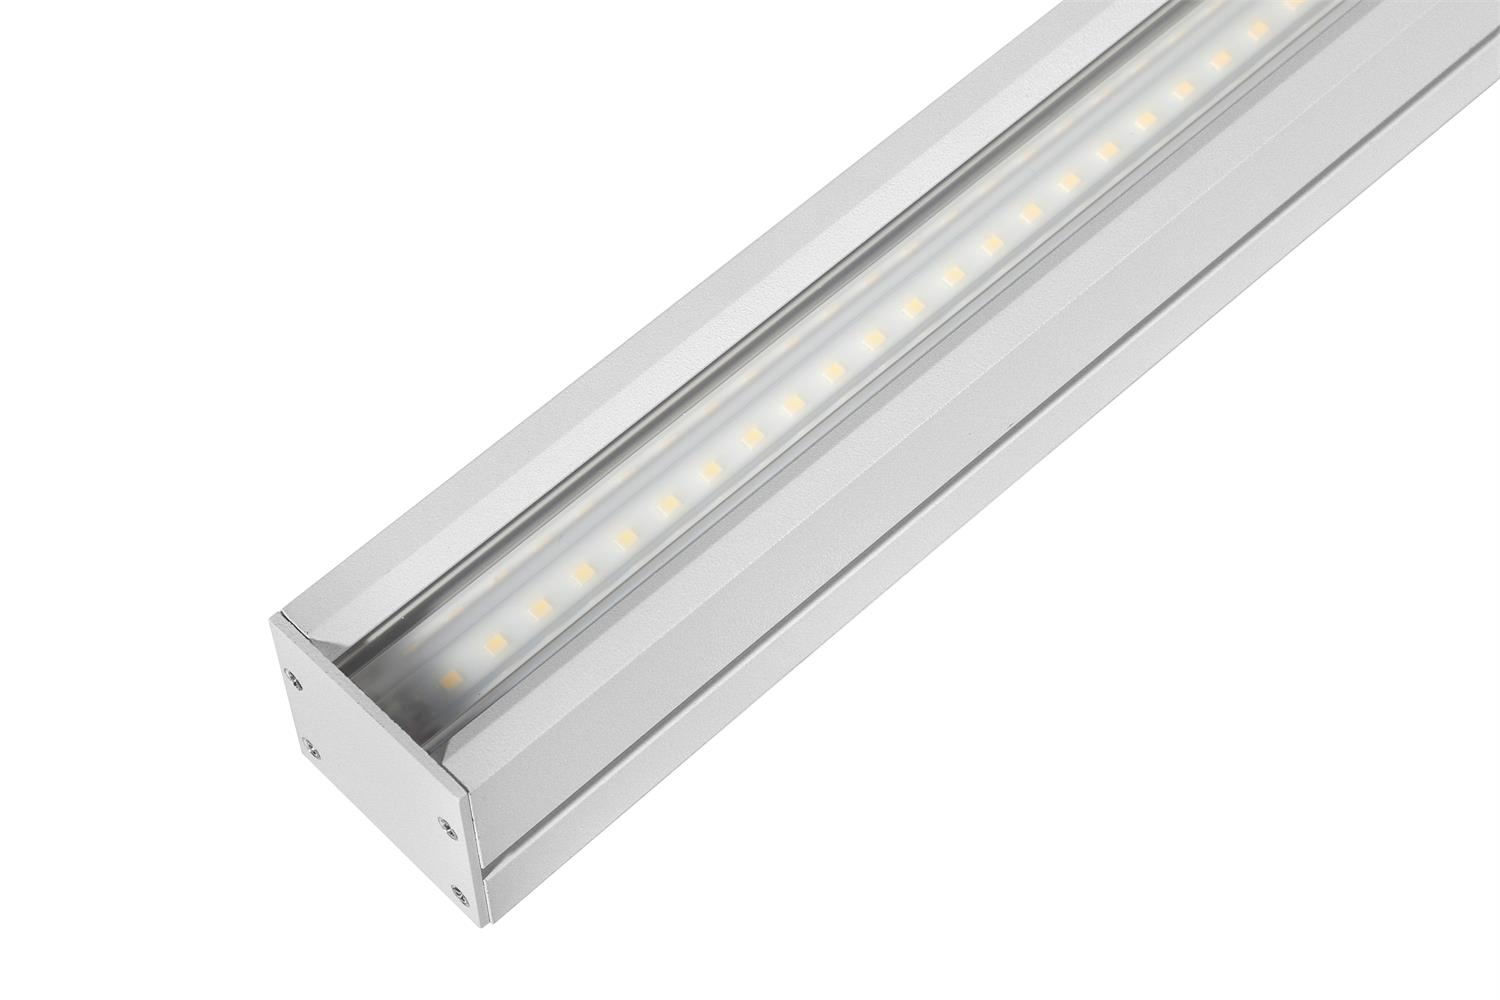 LED Linear Light L838